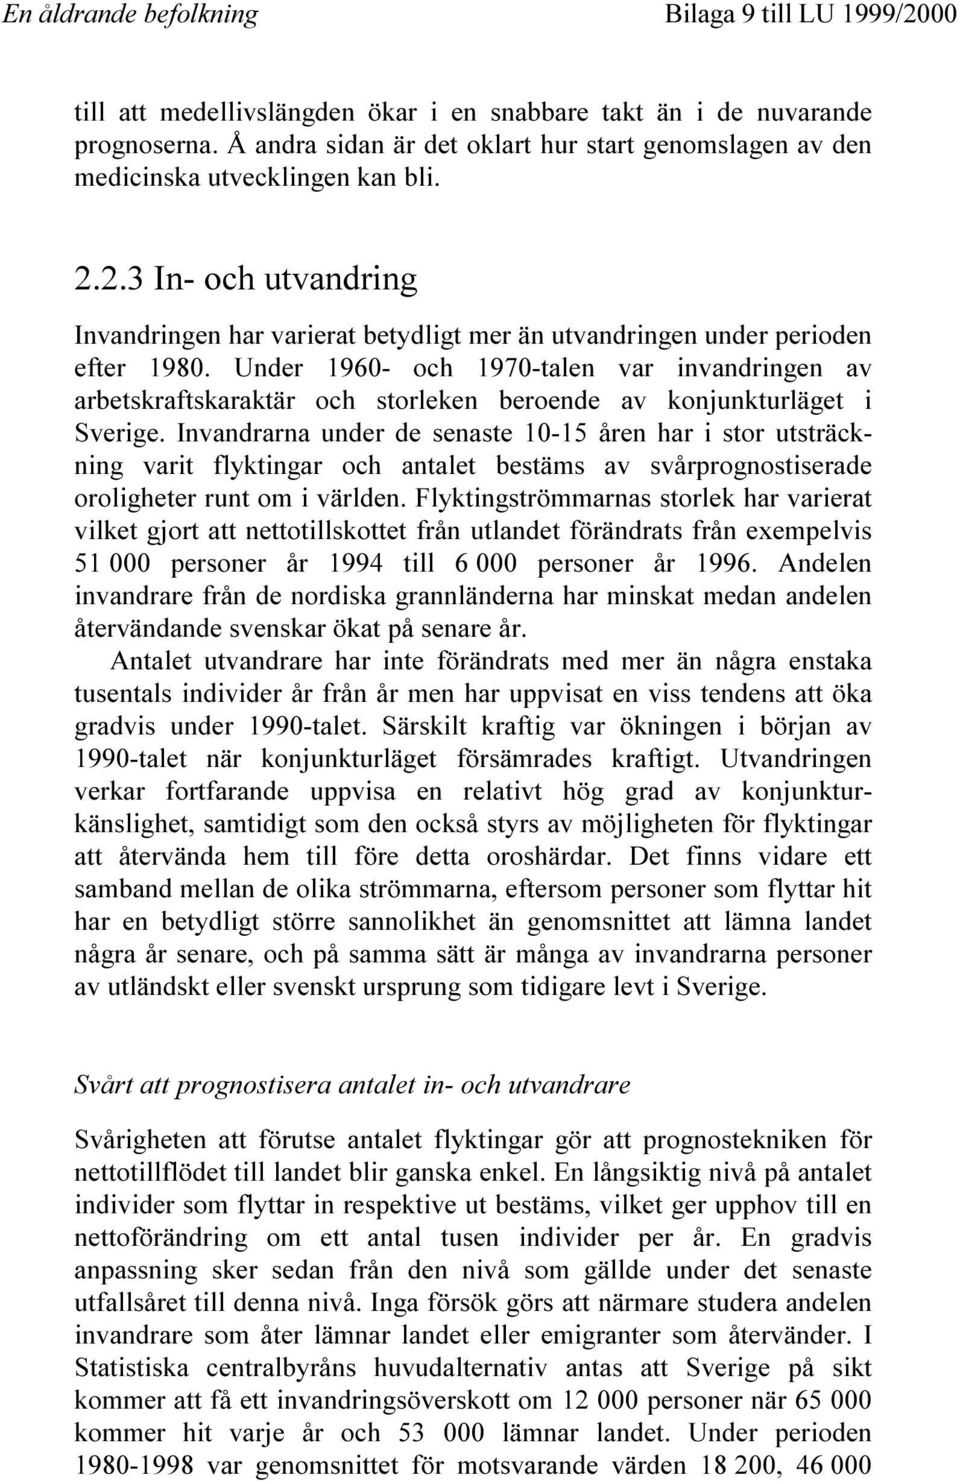 Under 1960- och 1970-talen var invandringen av arbetskraftskaraktär och storleken beroende av konjunkturläget i Sverige.